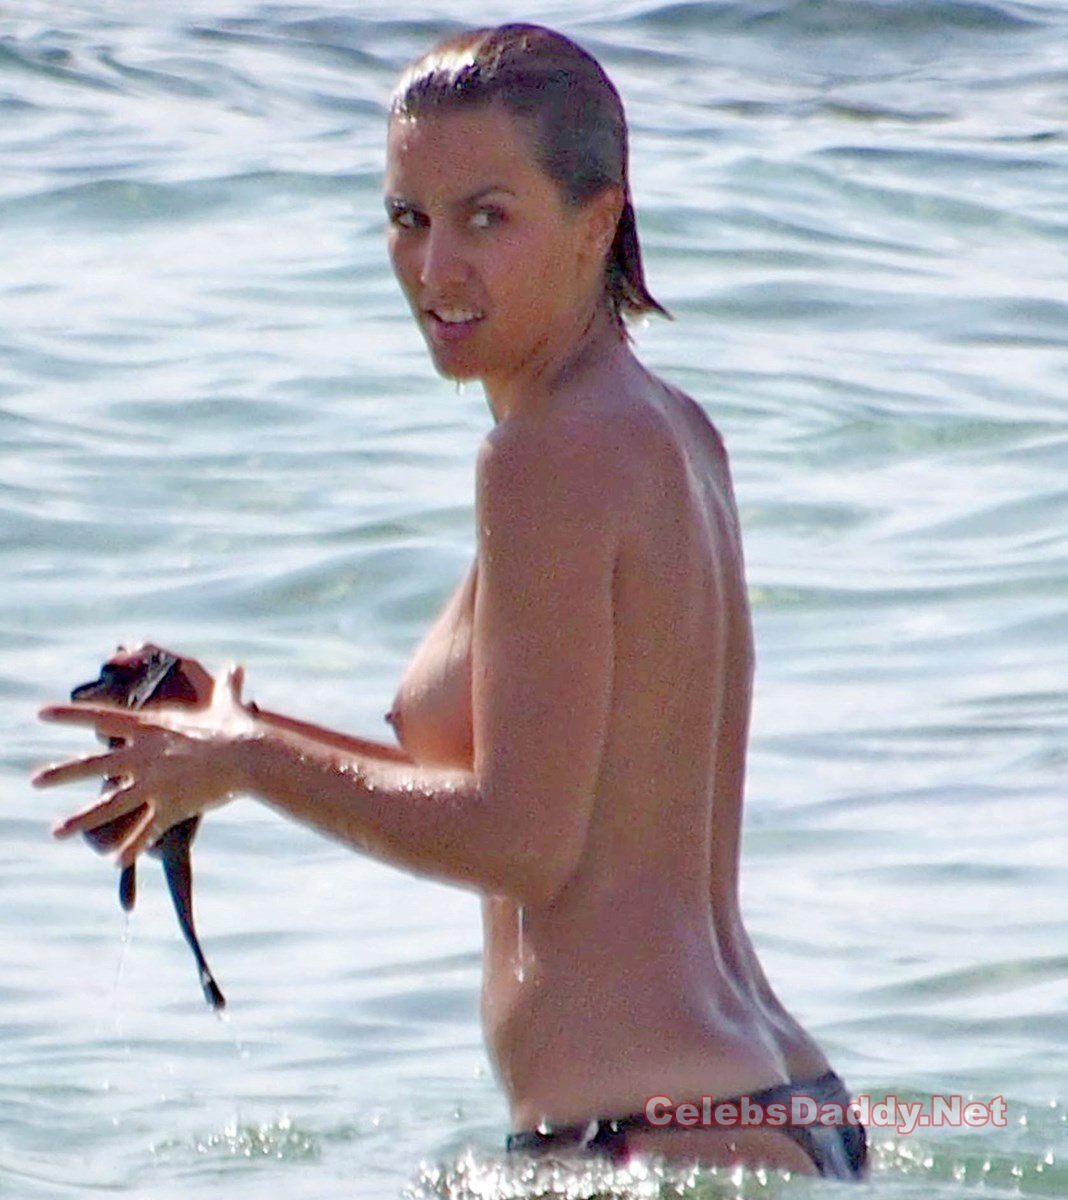 Megan montaner nude - 🧡 Megan Montaner Nude Sex Scenes & Topless Pics ...